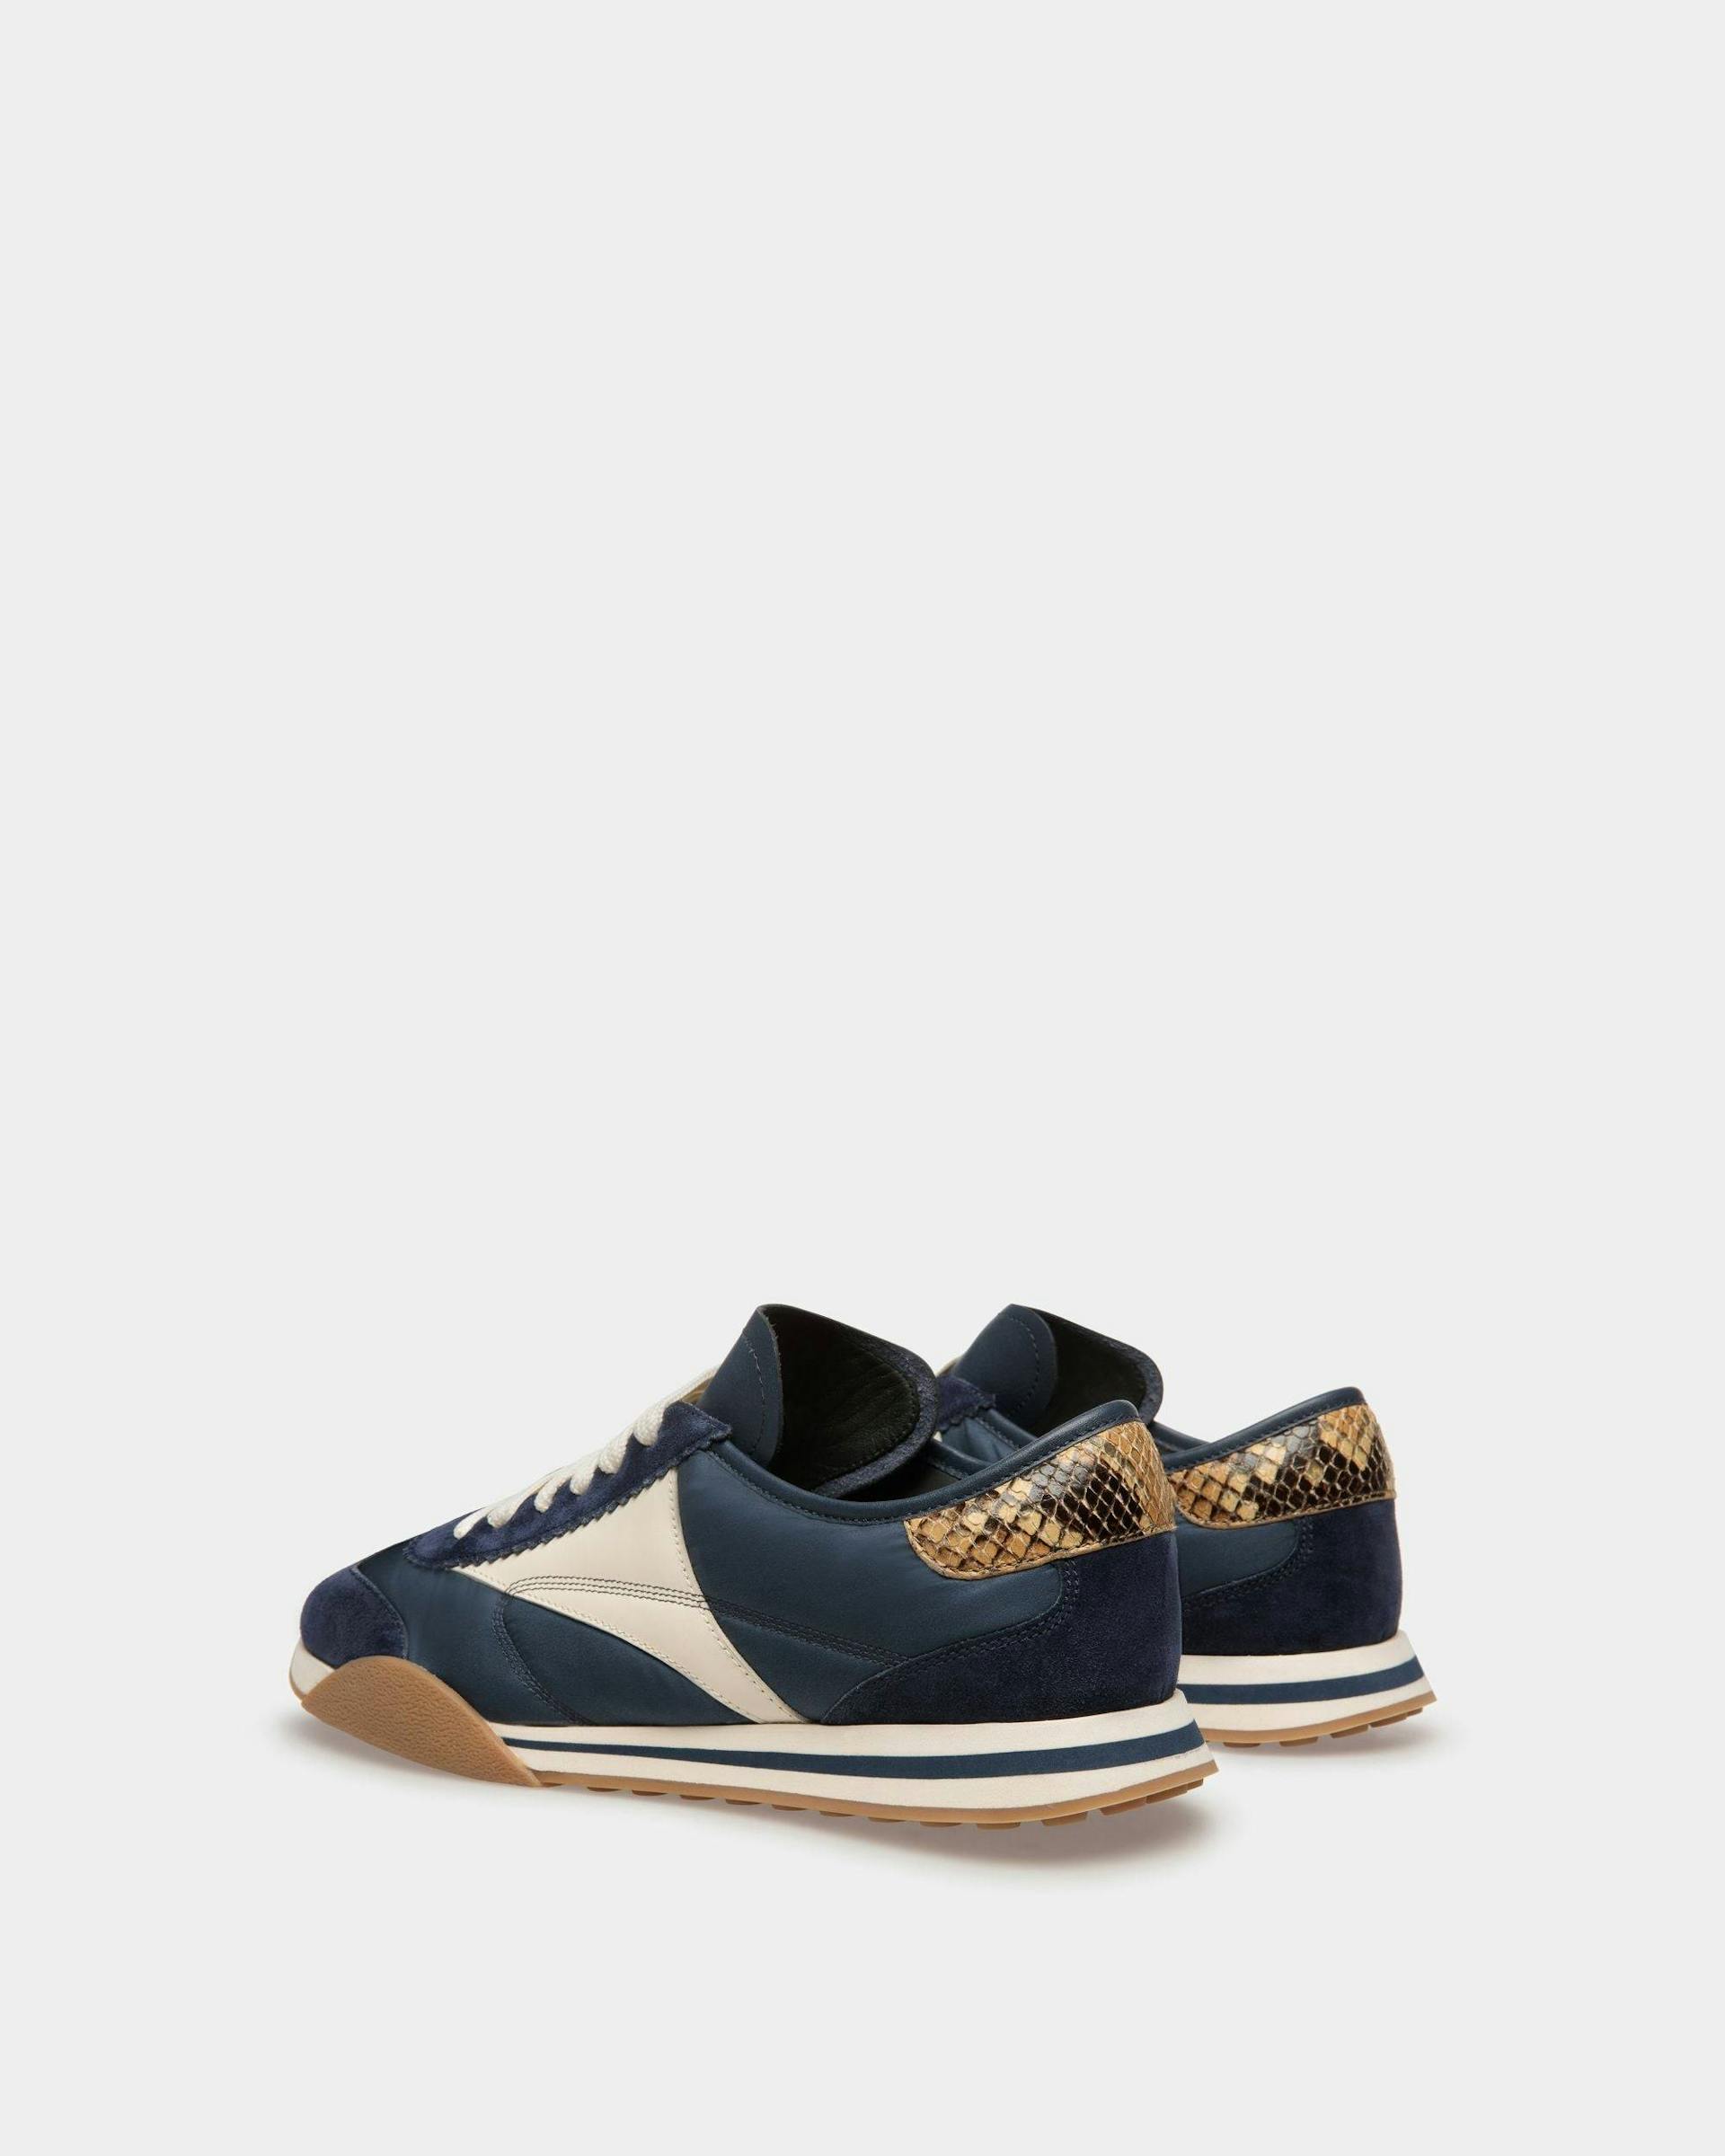 Sneakers Sussex En cuir et tissu bleu marine et ivoire - Homme - Bally - 03